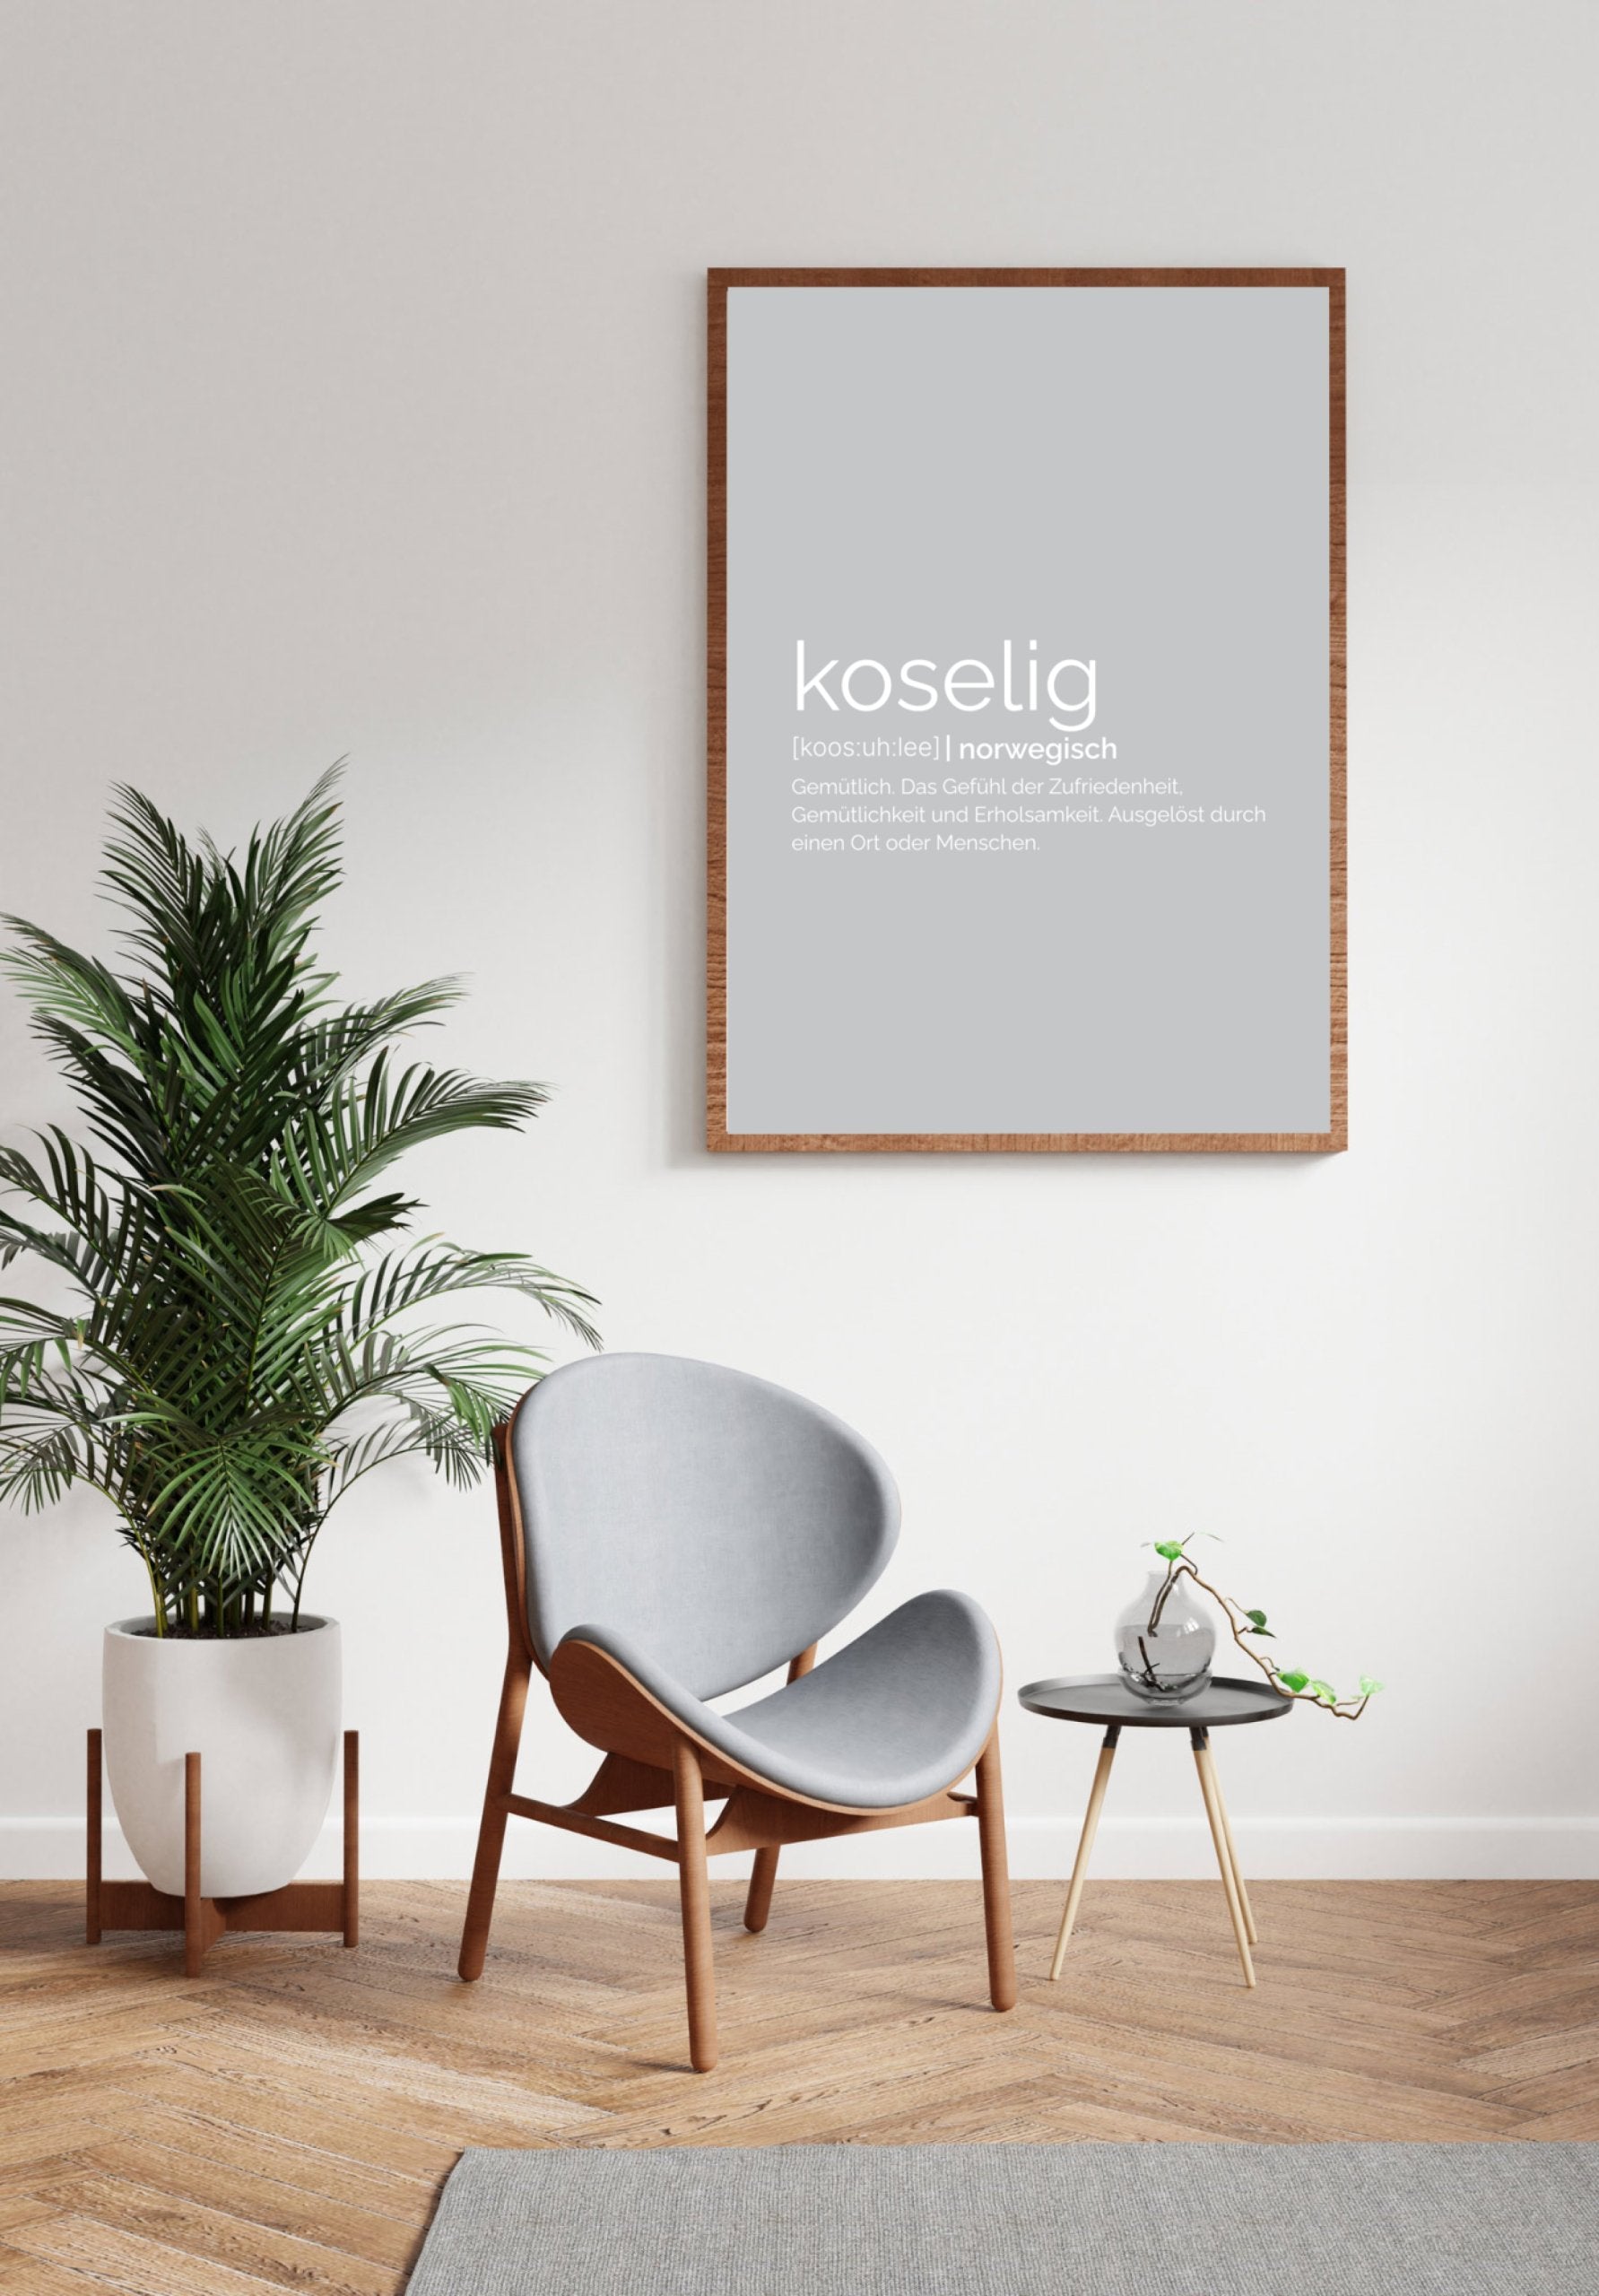 MOTIVISSO Poster Koselig in grau im Bilderrahmen an Wand, da drunter Pflanze und Stuhl